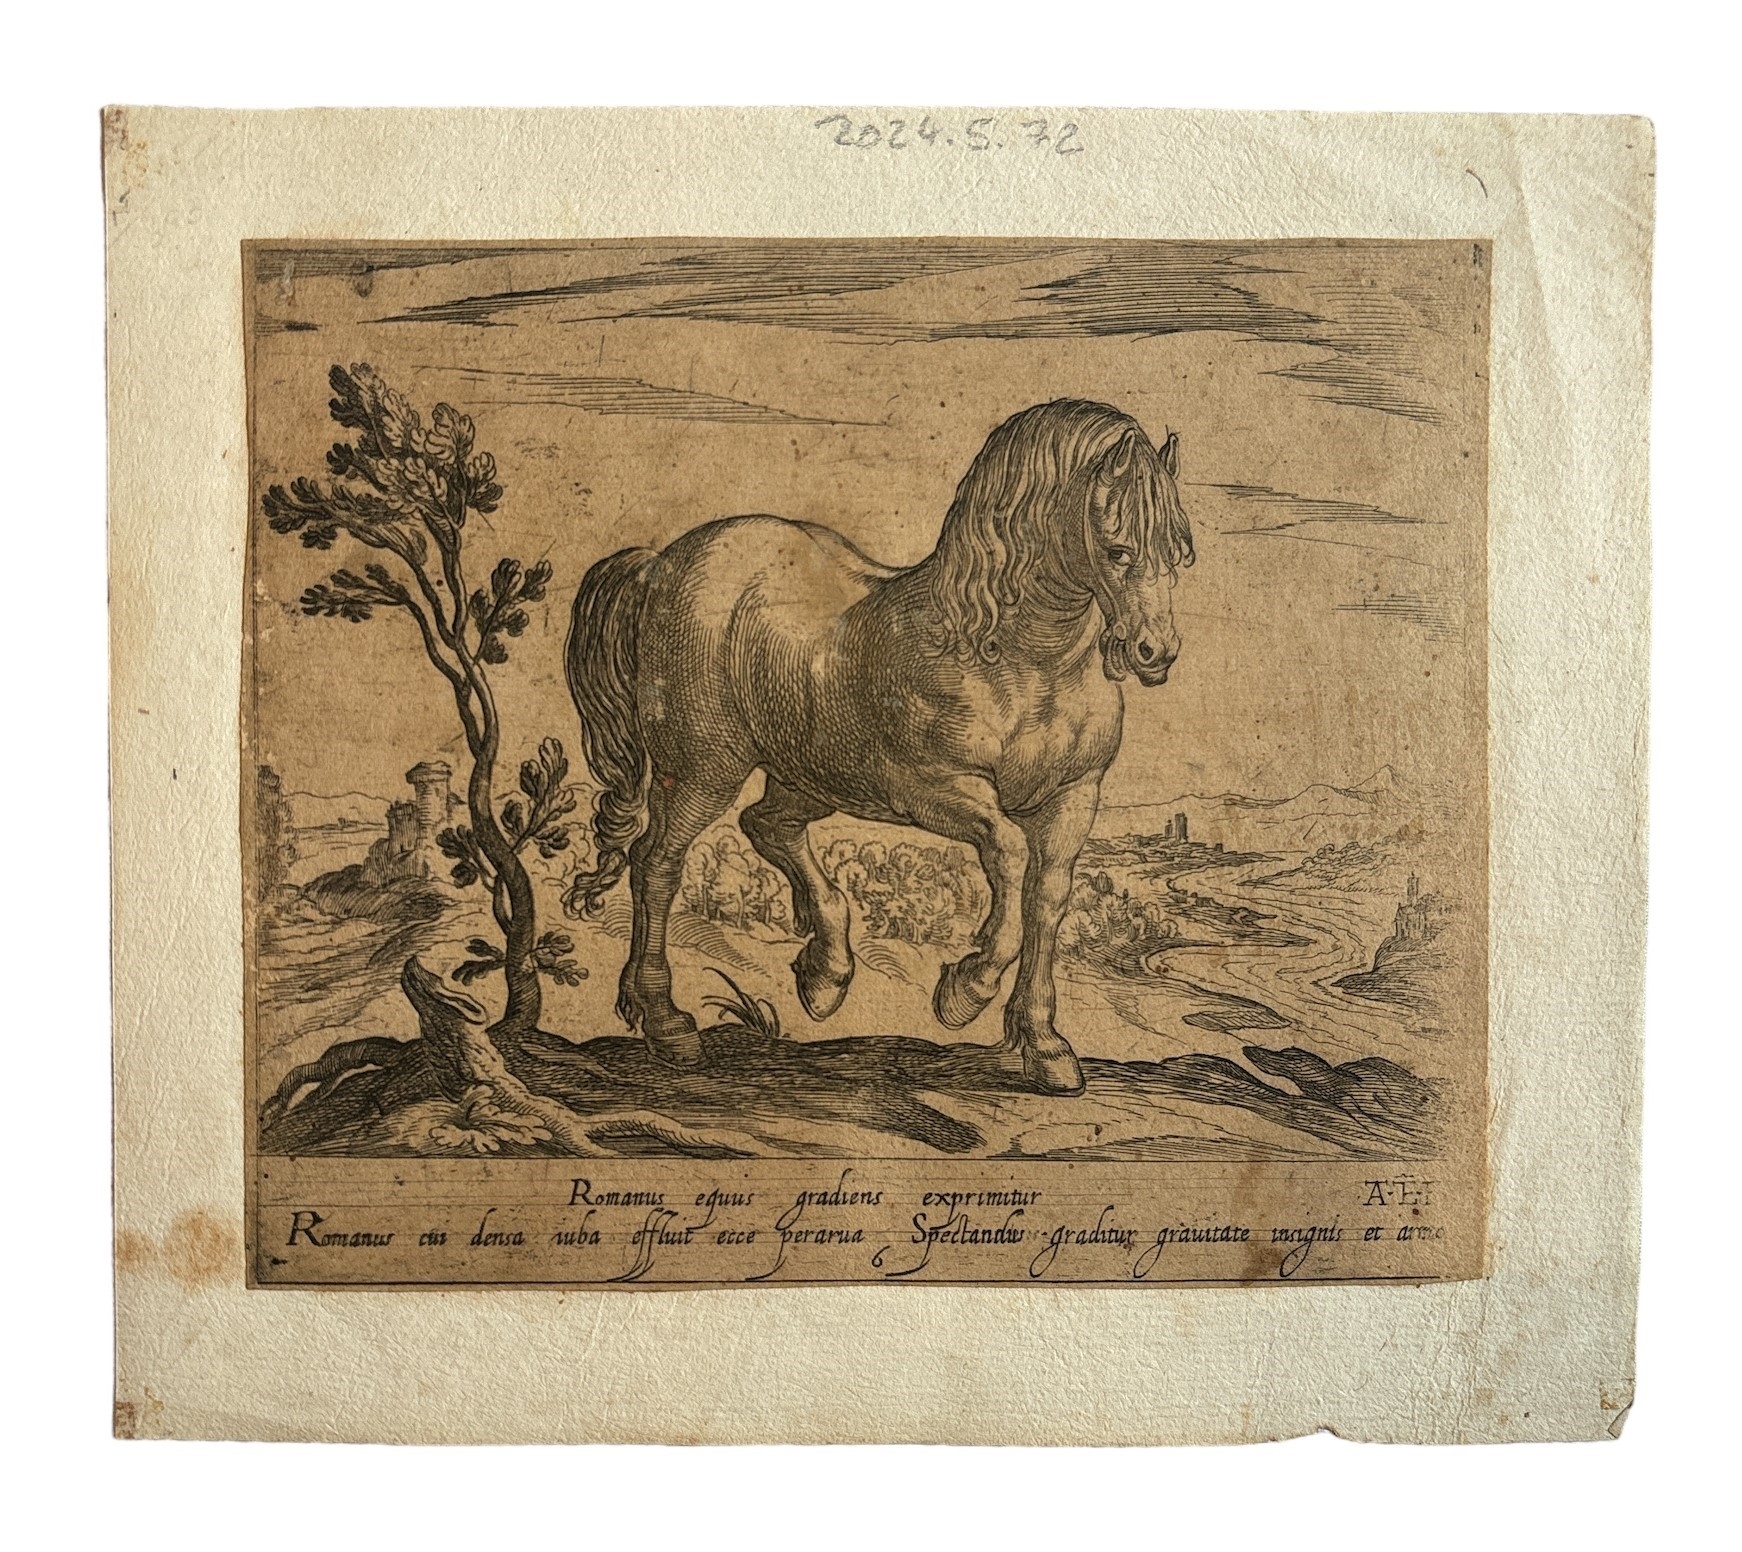 Romanus equus gradiens exprimitur, Fine XVI secolo by Antonio Tempesta